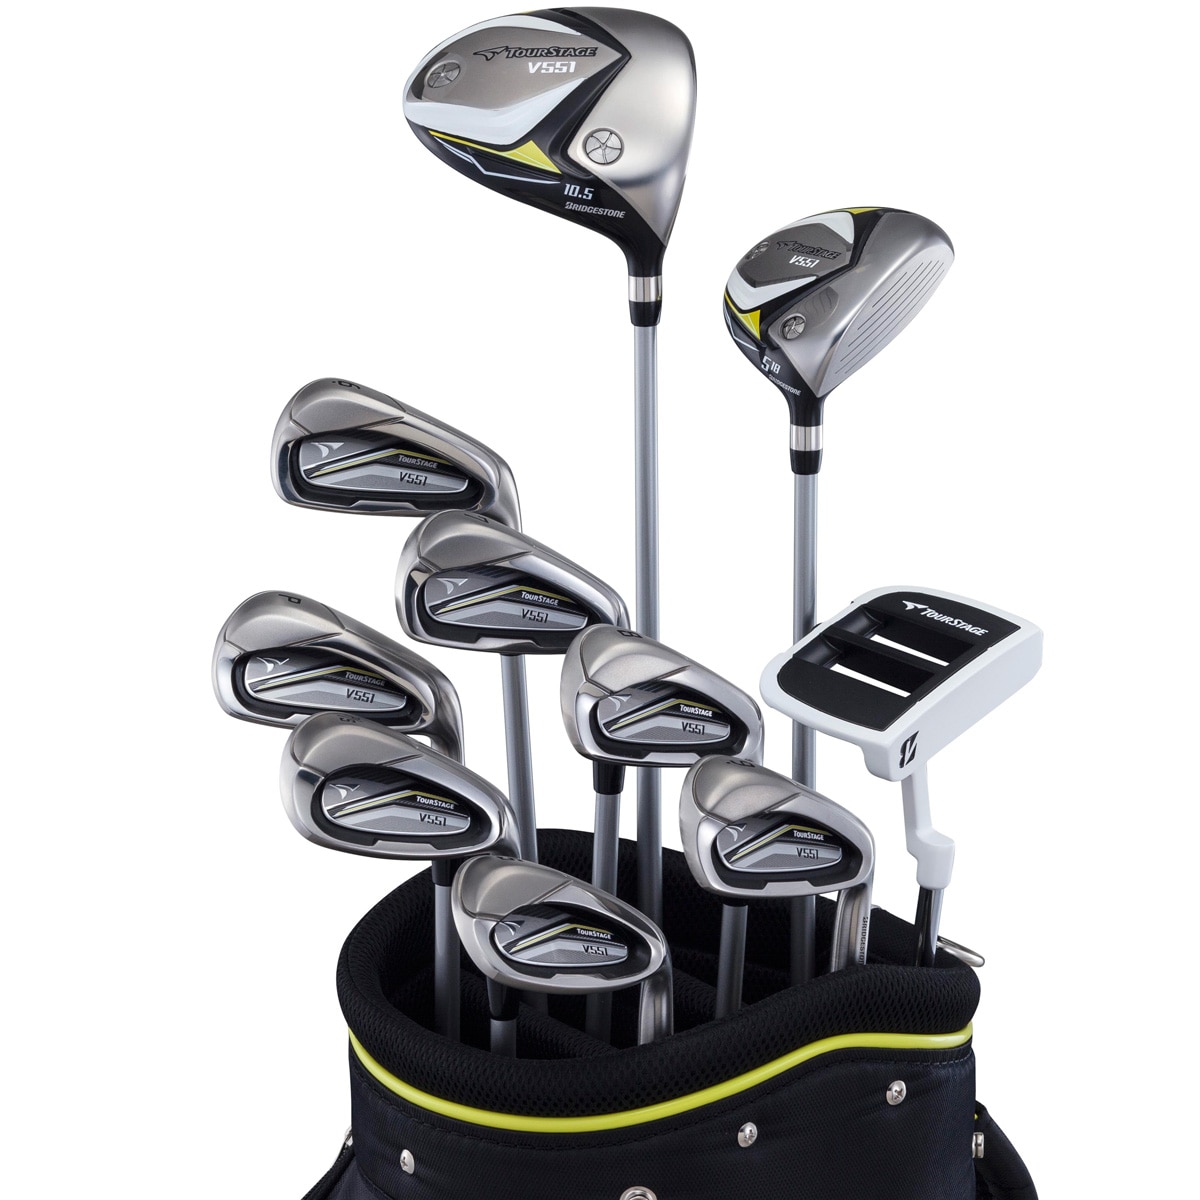 GolfsetTOURSTAGE V551 メンズゴルフクラブセット